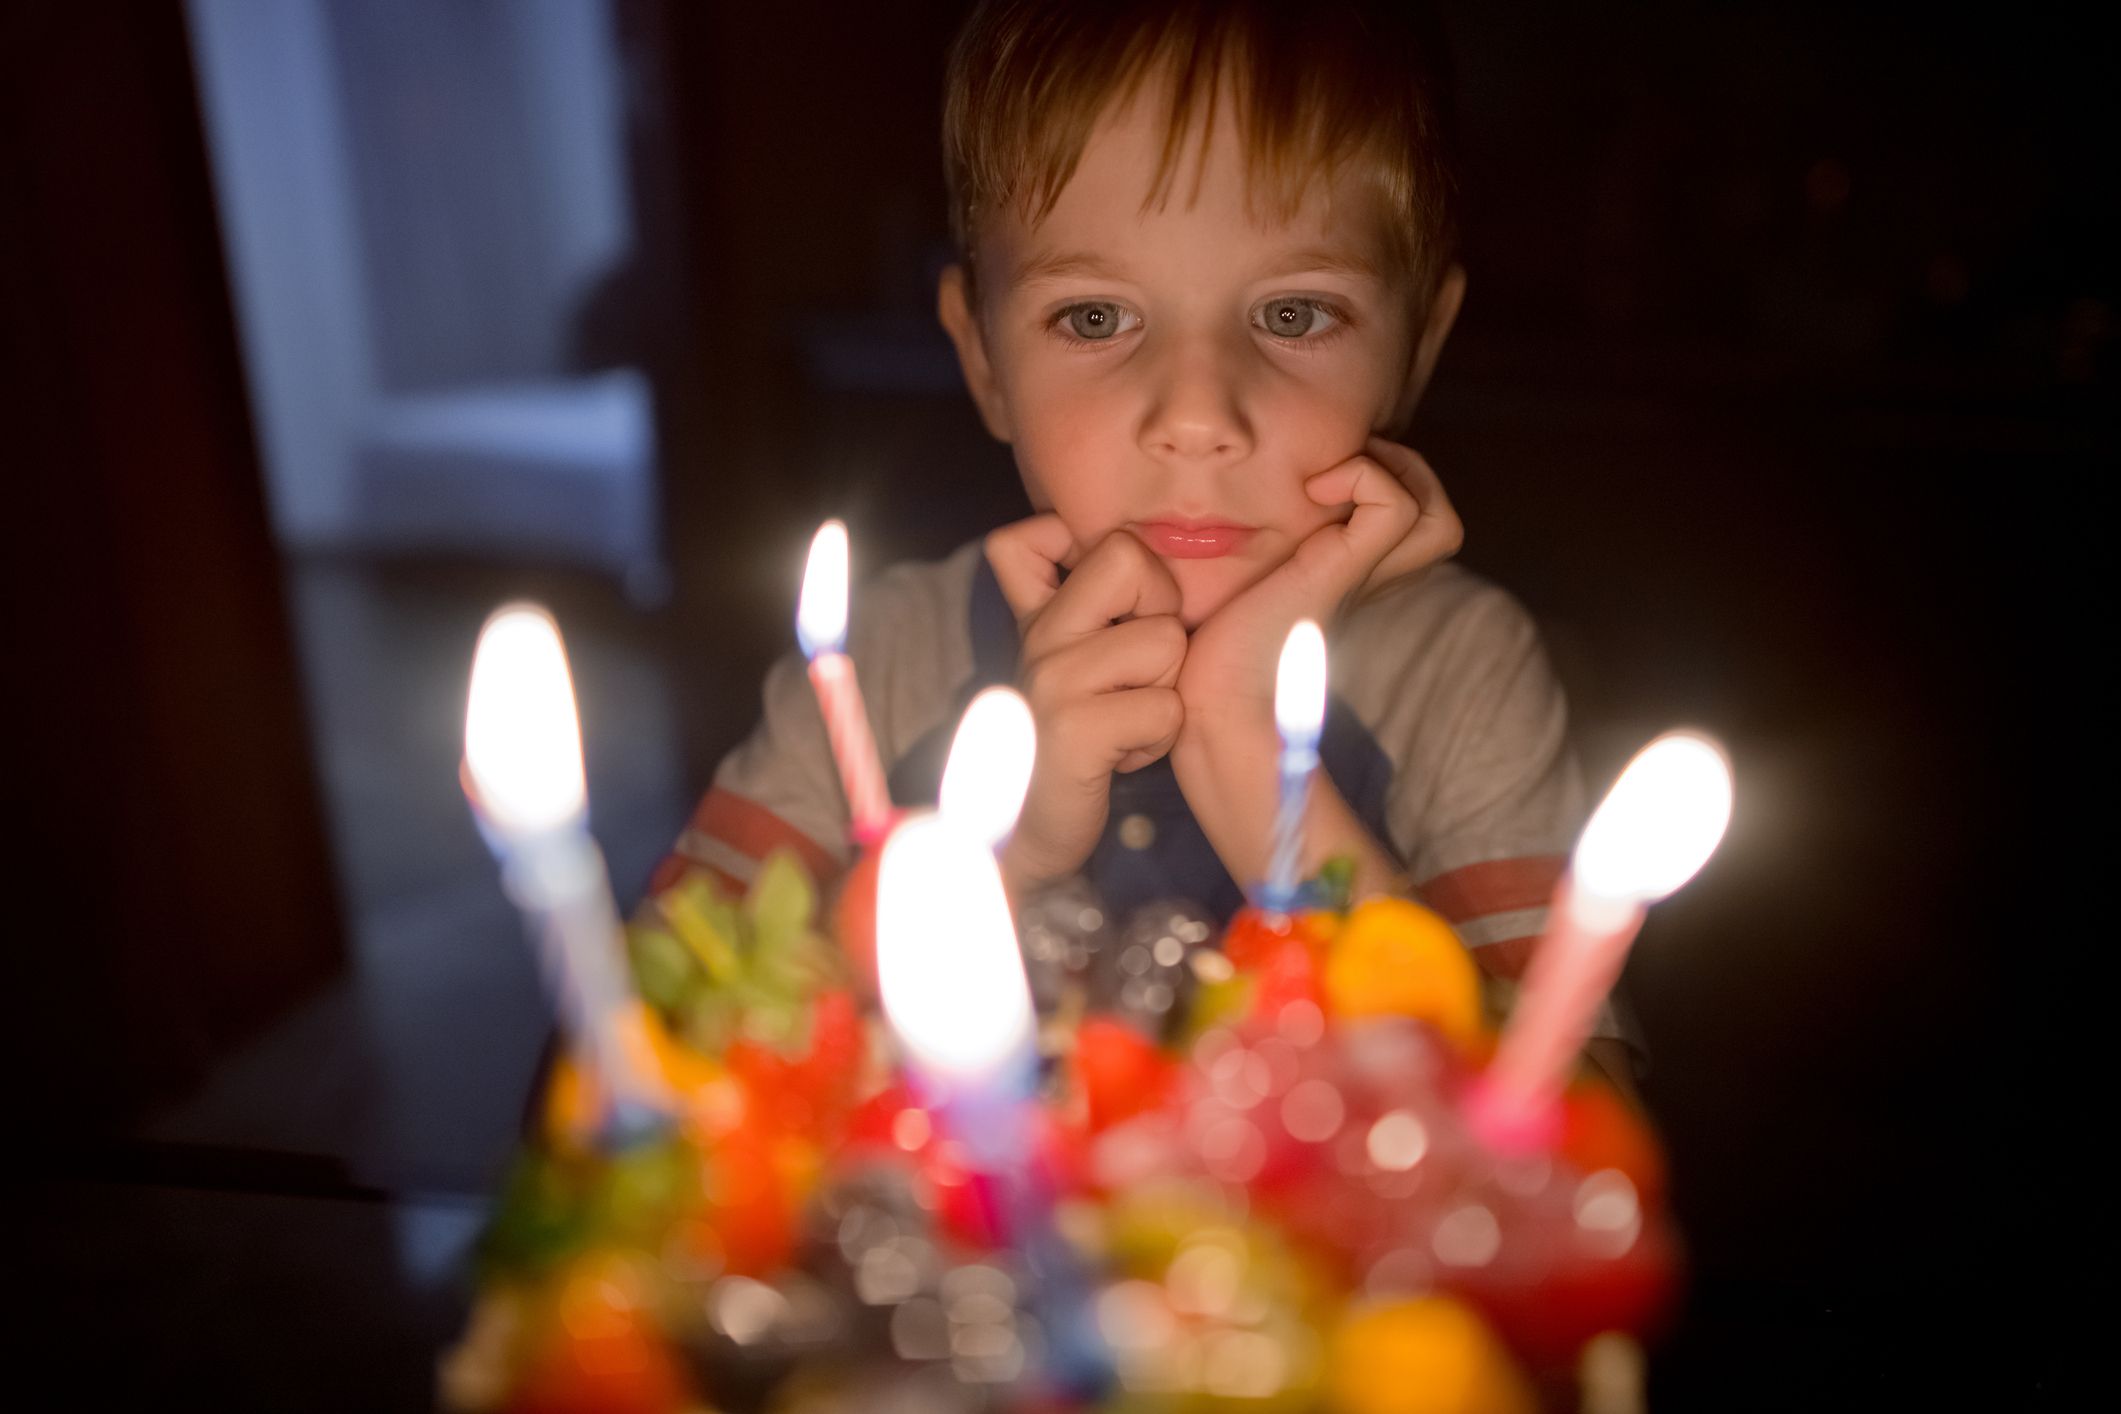 Un petit garçon regarde un gâteau d'anniversaire. | Source : Getty Images